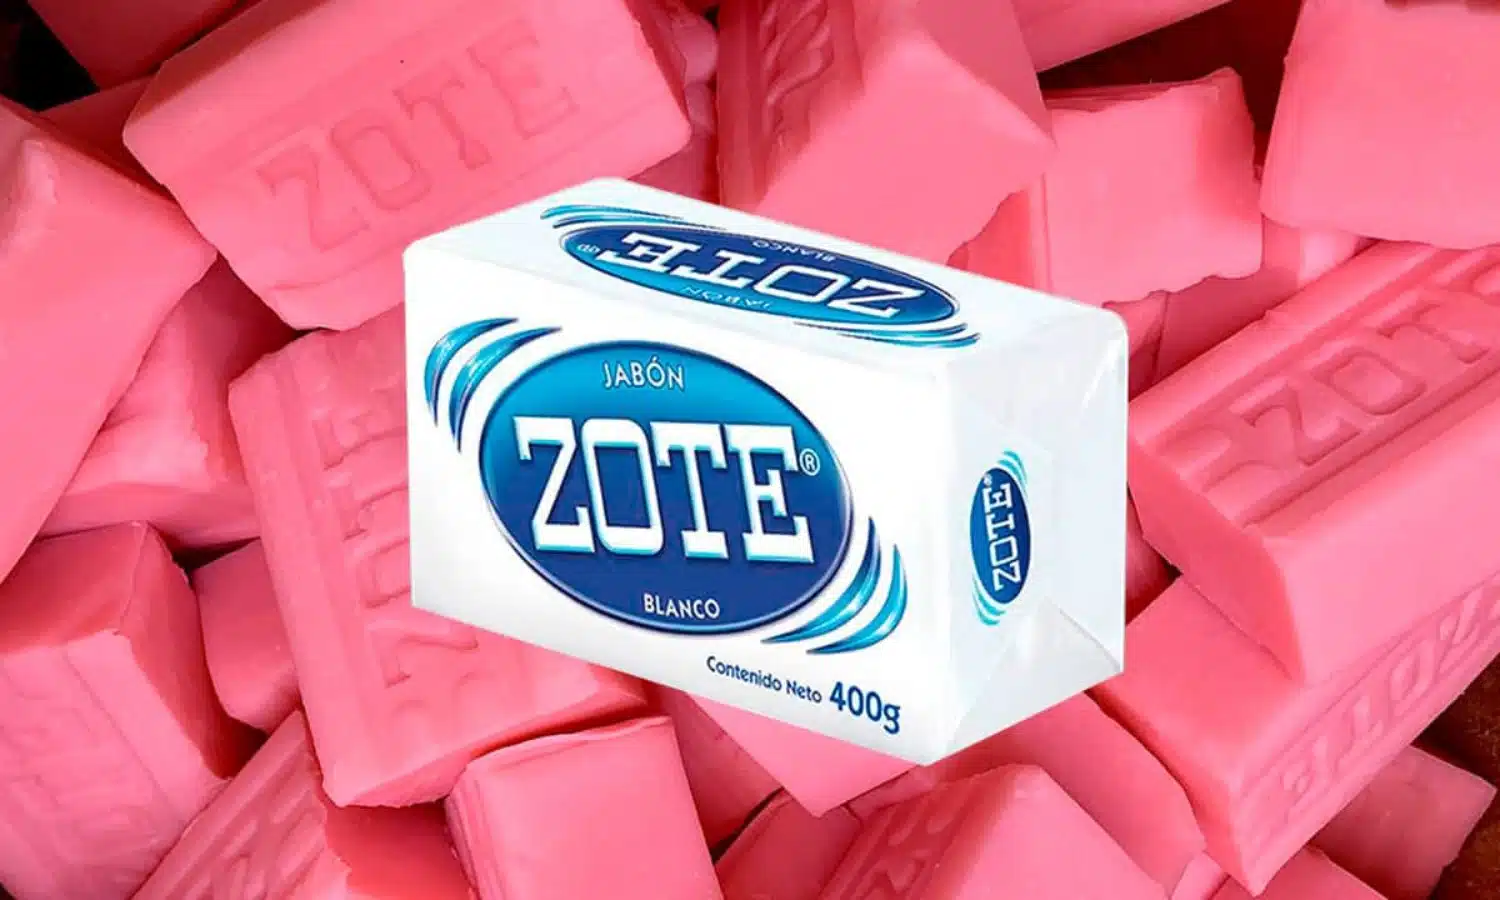 Uso del jabón Zote